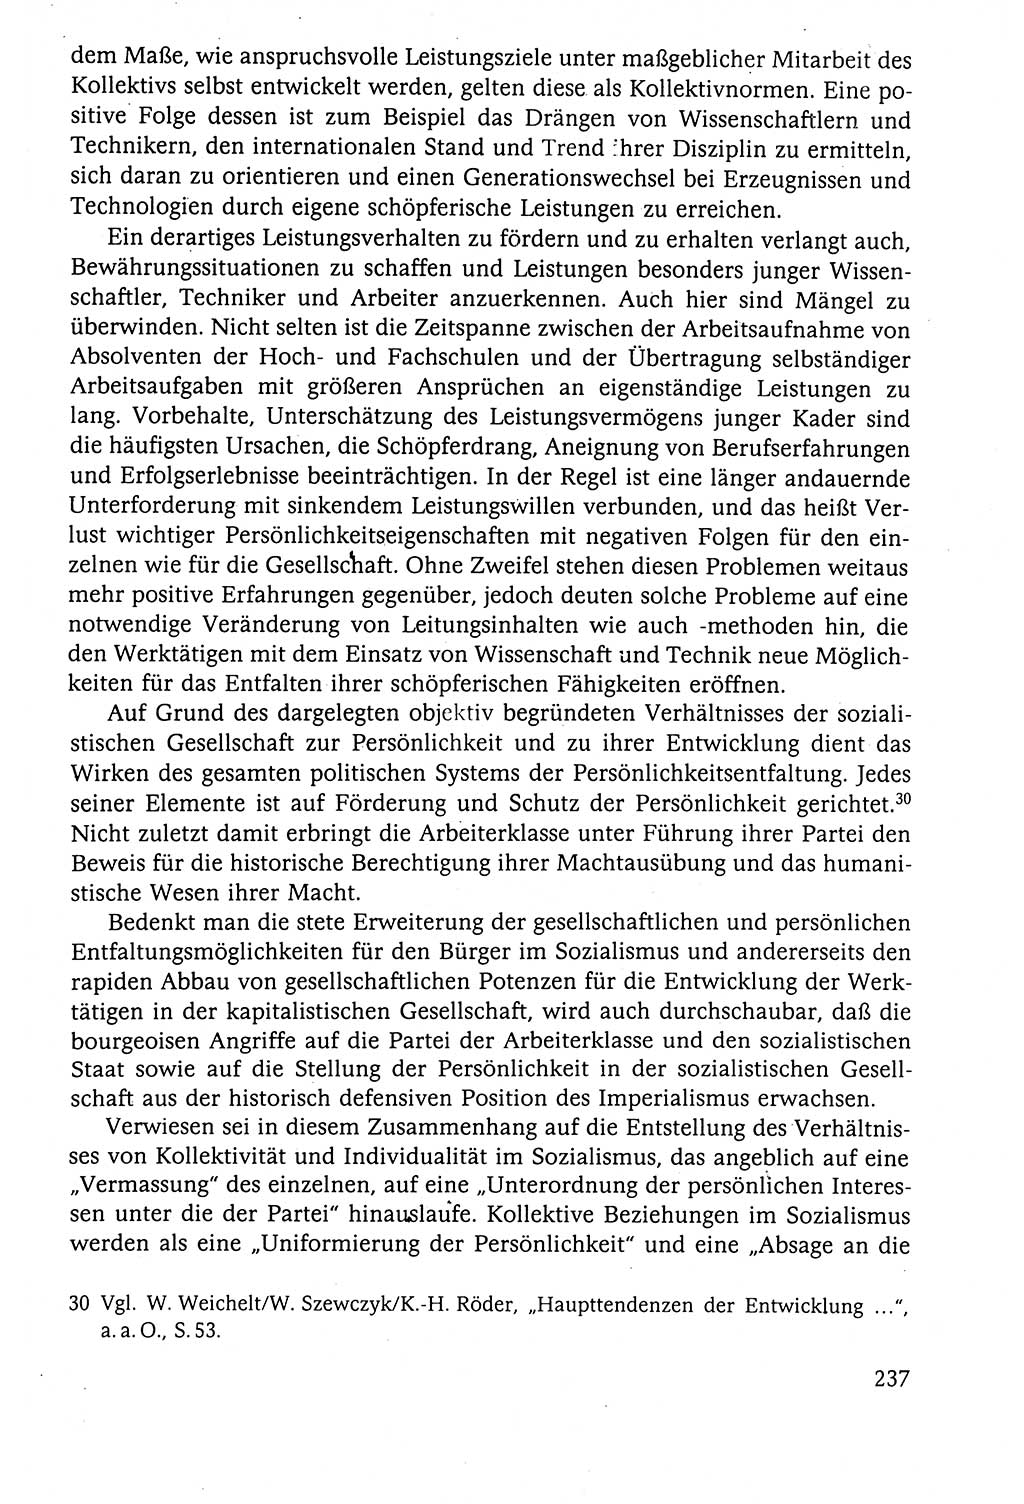 Der Staat im politischen System der DDR (Deutsche Demokratische Republik) 1986, Seite 237 (St. pol. Sys. DDR 1986, S. 237)